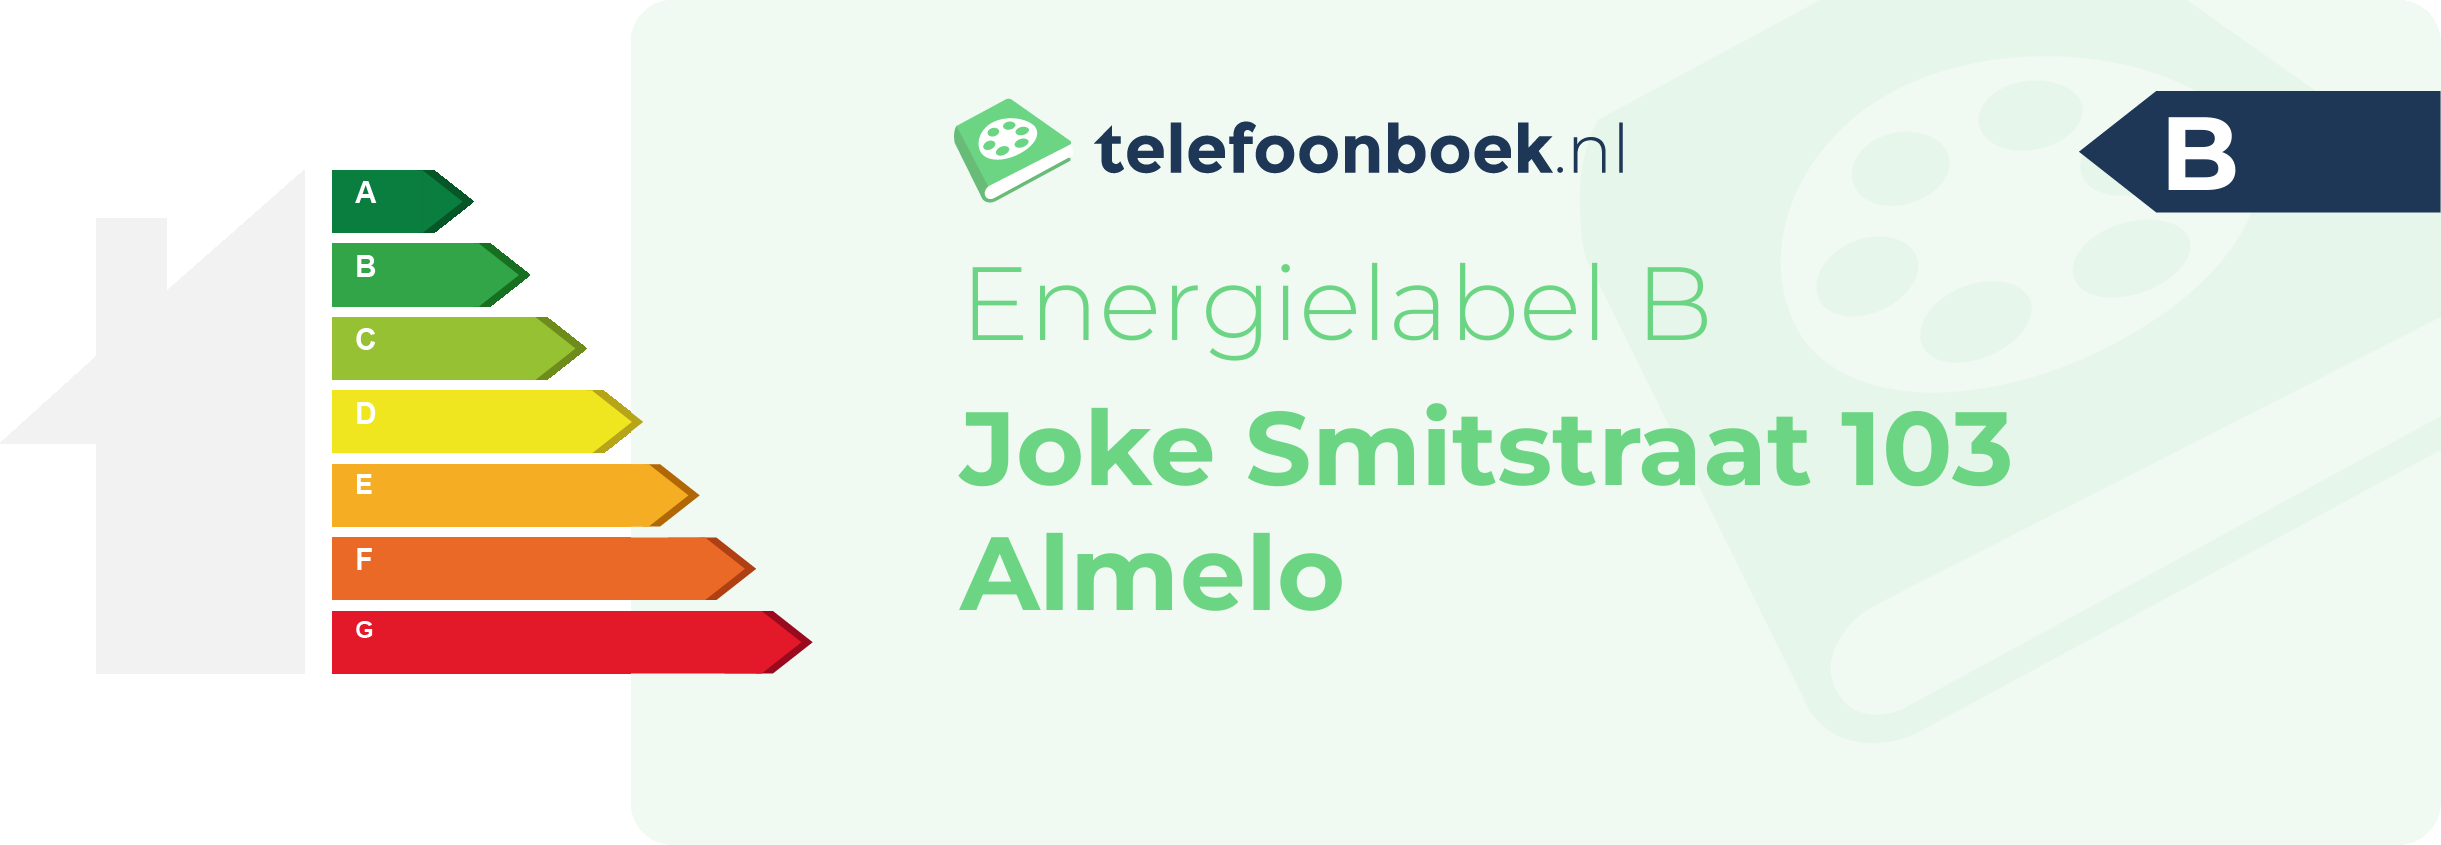 Energielabel Joke Smitstraat 103 Almelo